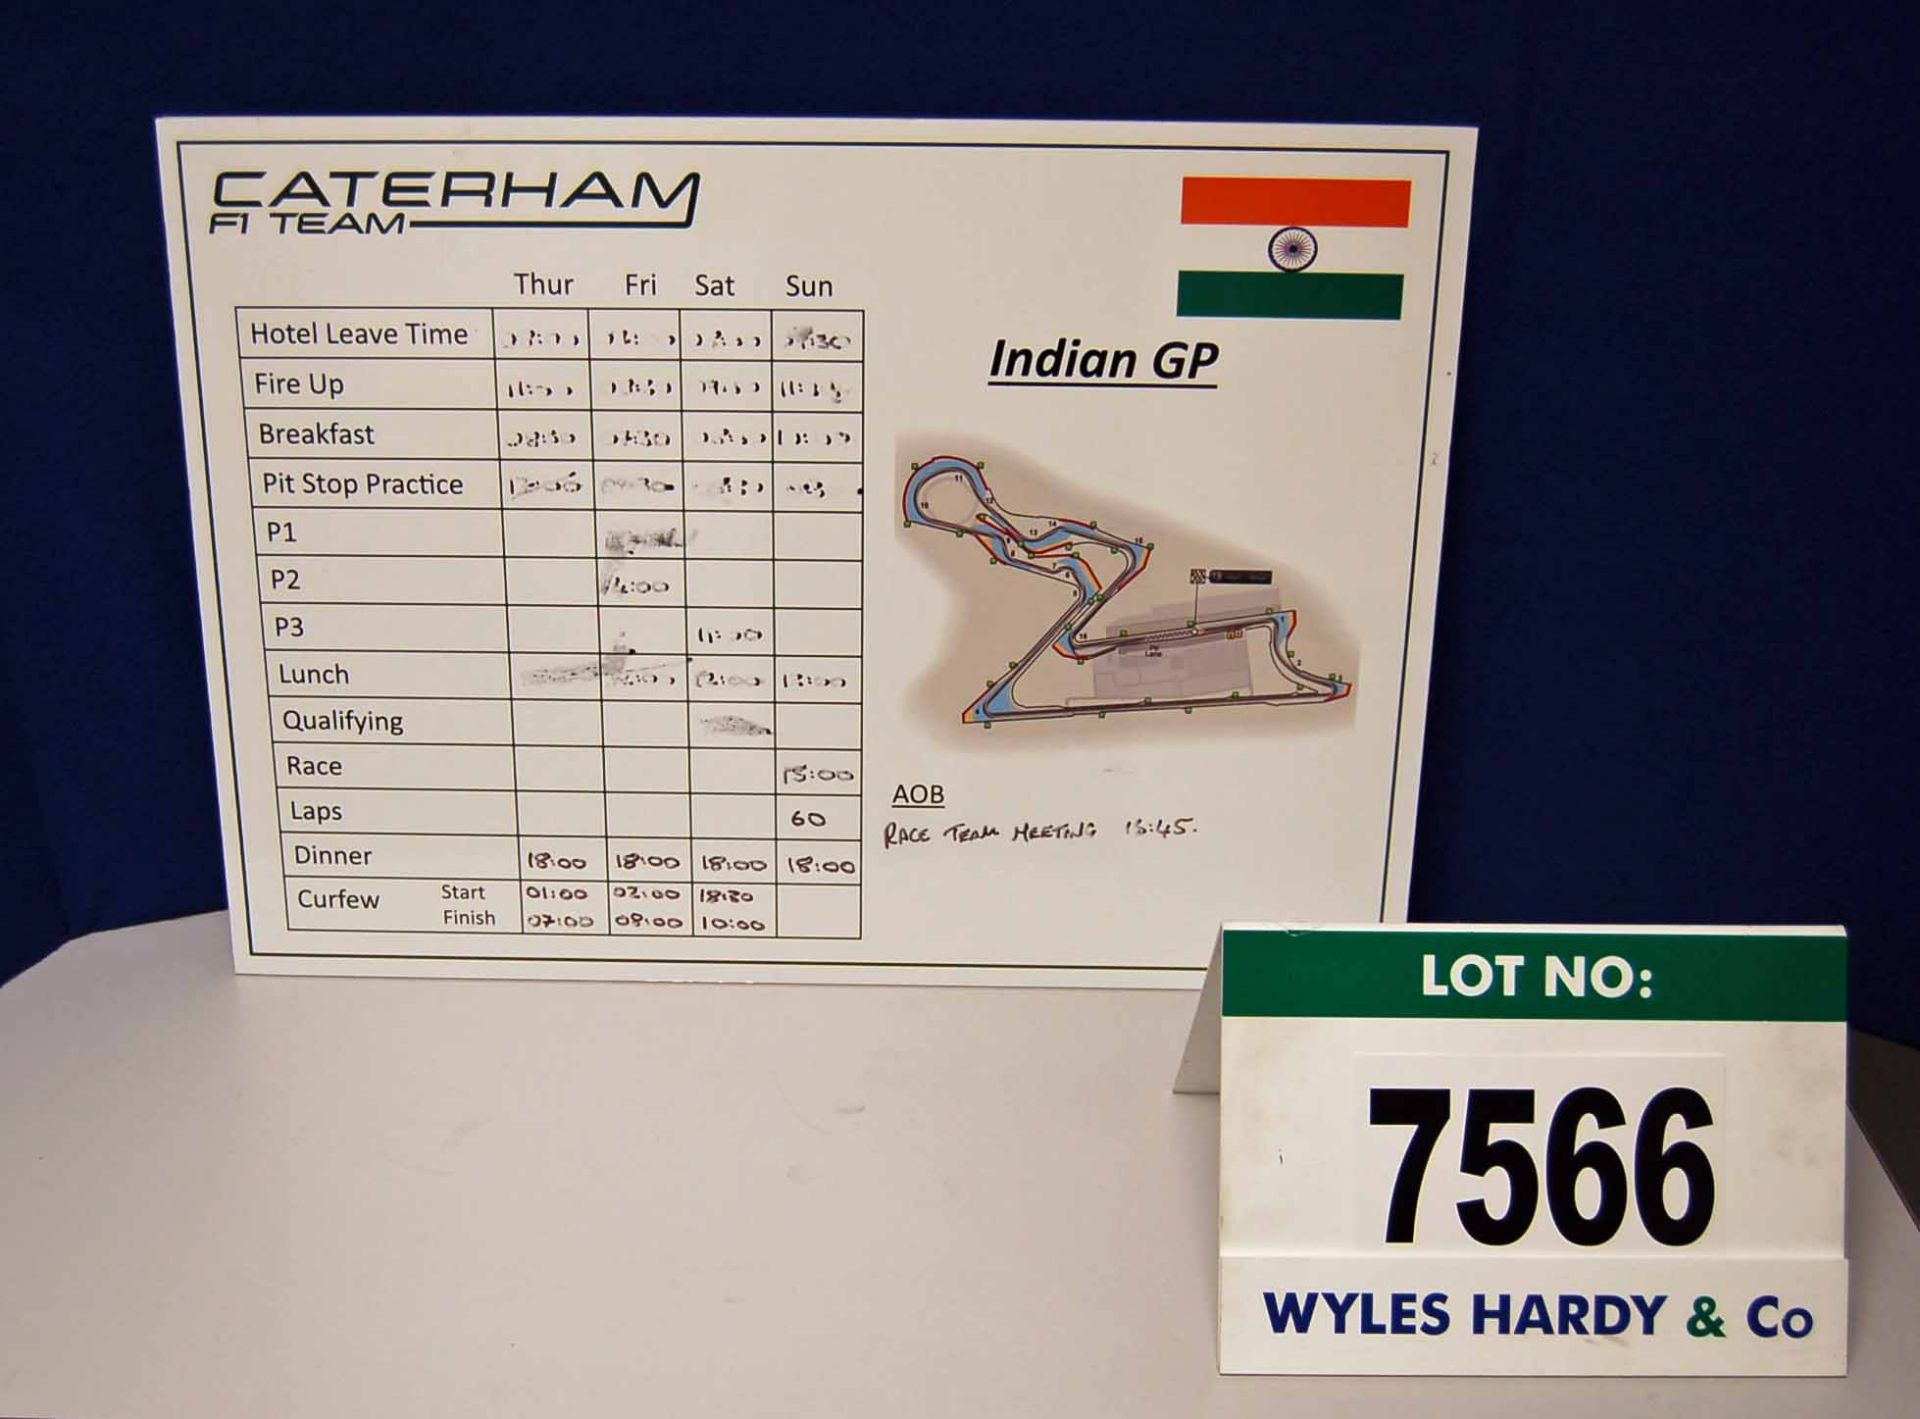 A CATERHAM F1 Team 500mm x 700mm Foamex Pit Crew Information Board - Indian Grand Prix  Want it